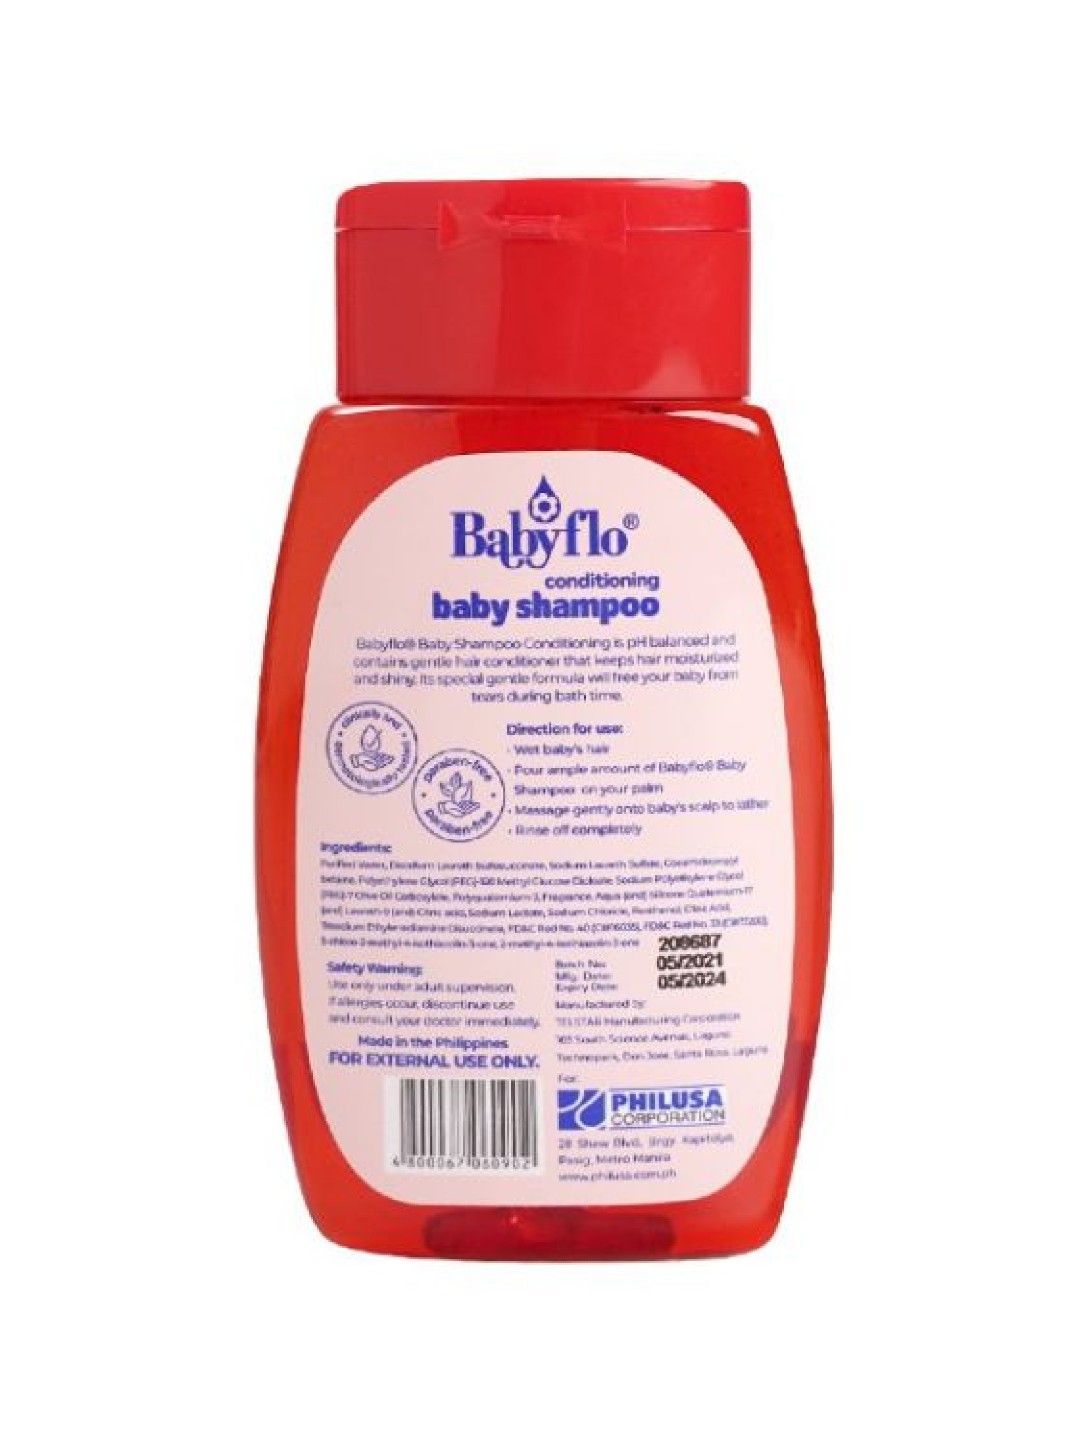 Babyflo Baby Shampoo Conditioning (125ml- Image 2)